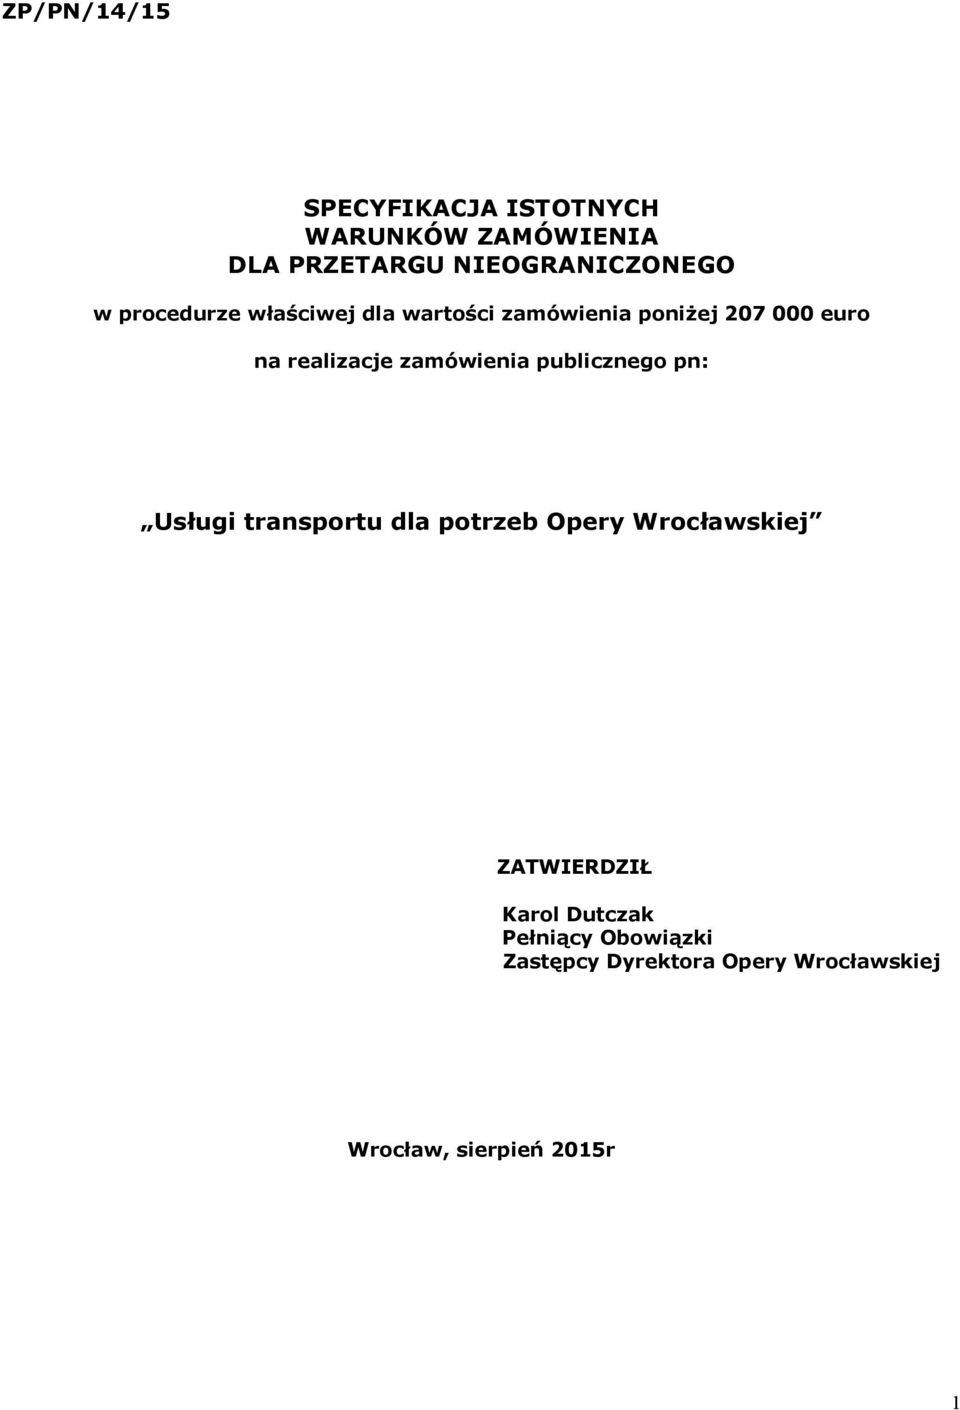 zamówienia publicznego pn: Usługi transportu dla potrzeb Opery Wrocławskiej ZATWIERDZIŁ